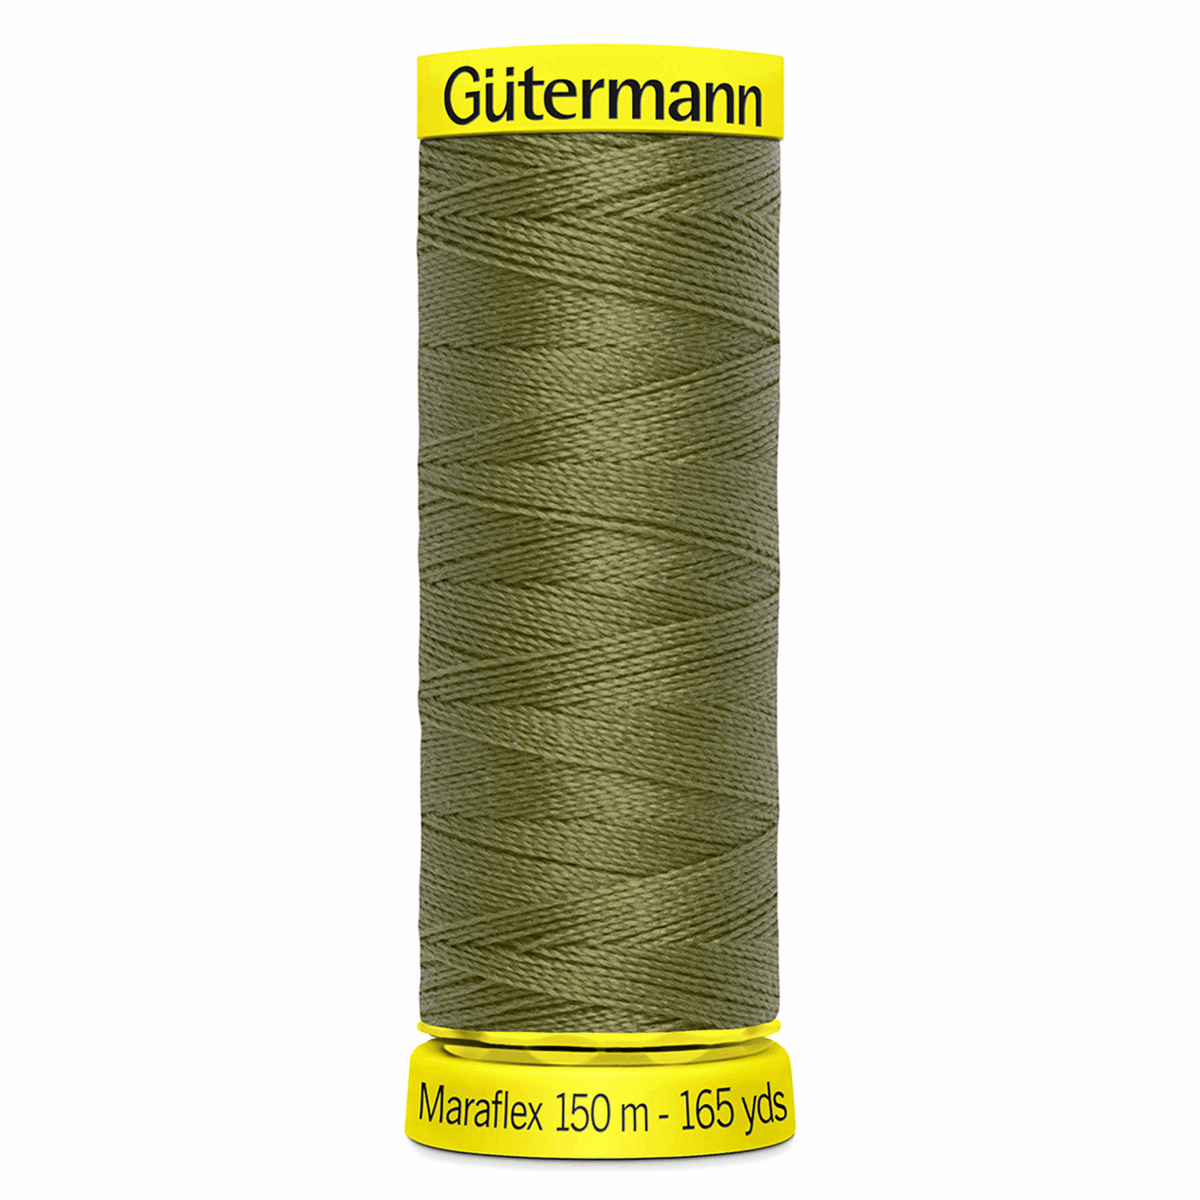 Gutermann Maraflex Elastic Sewing Thread 150m Olive 432